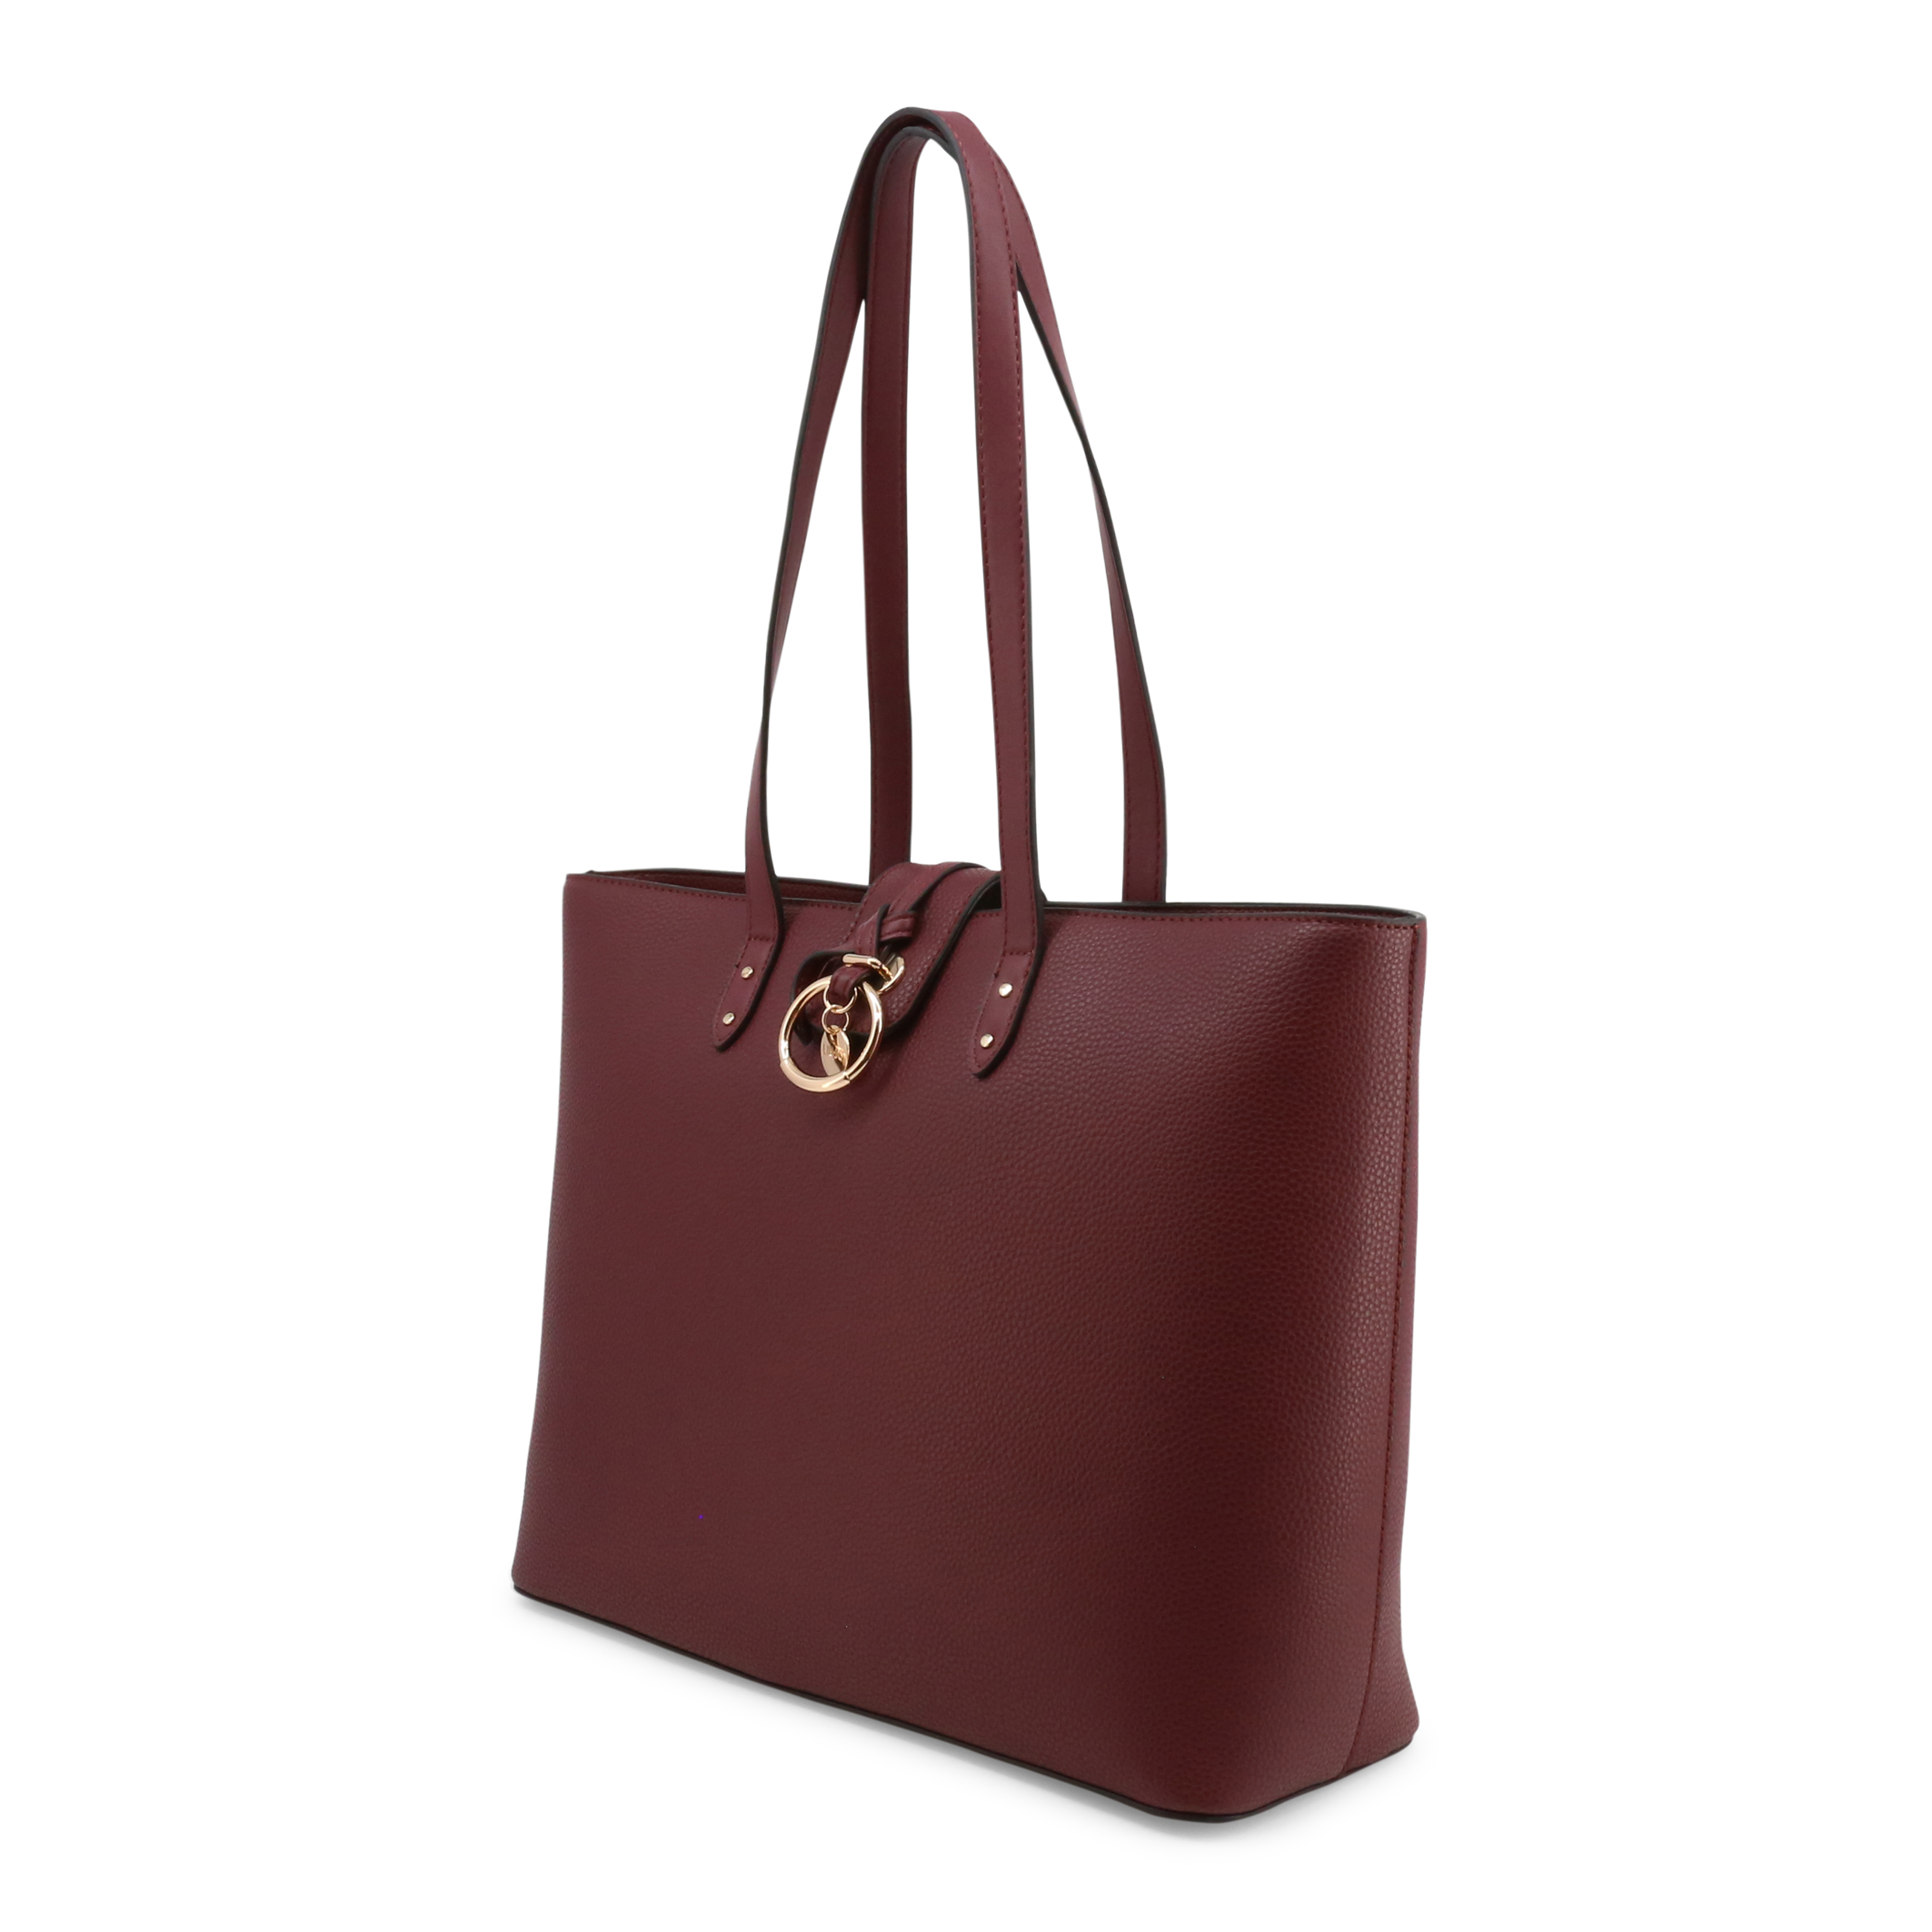 Liu Jo Red Shopping bags for Women - NF2035-E0086